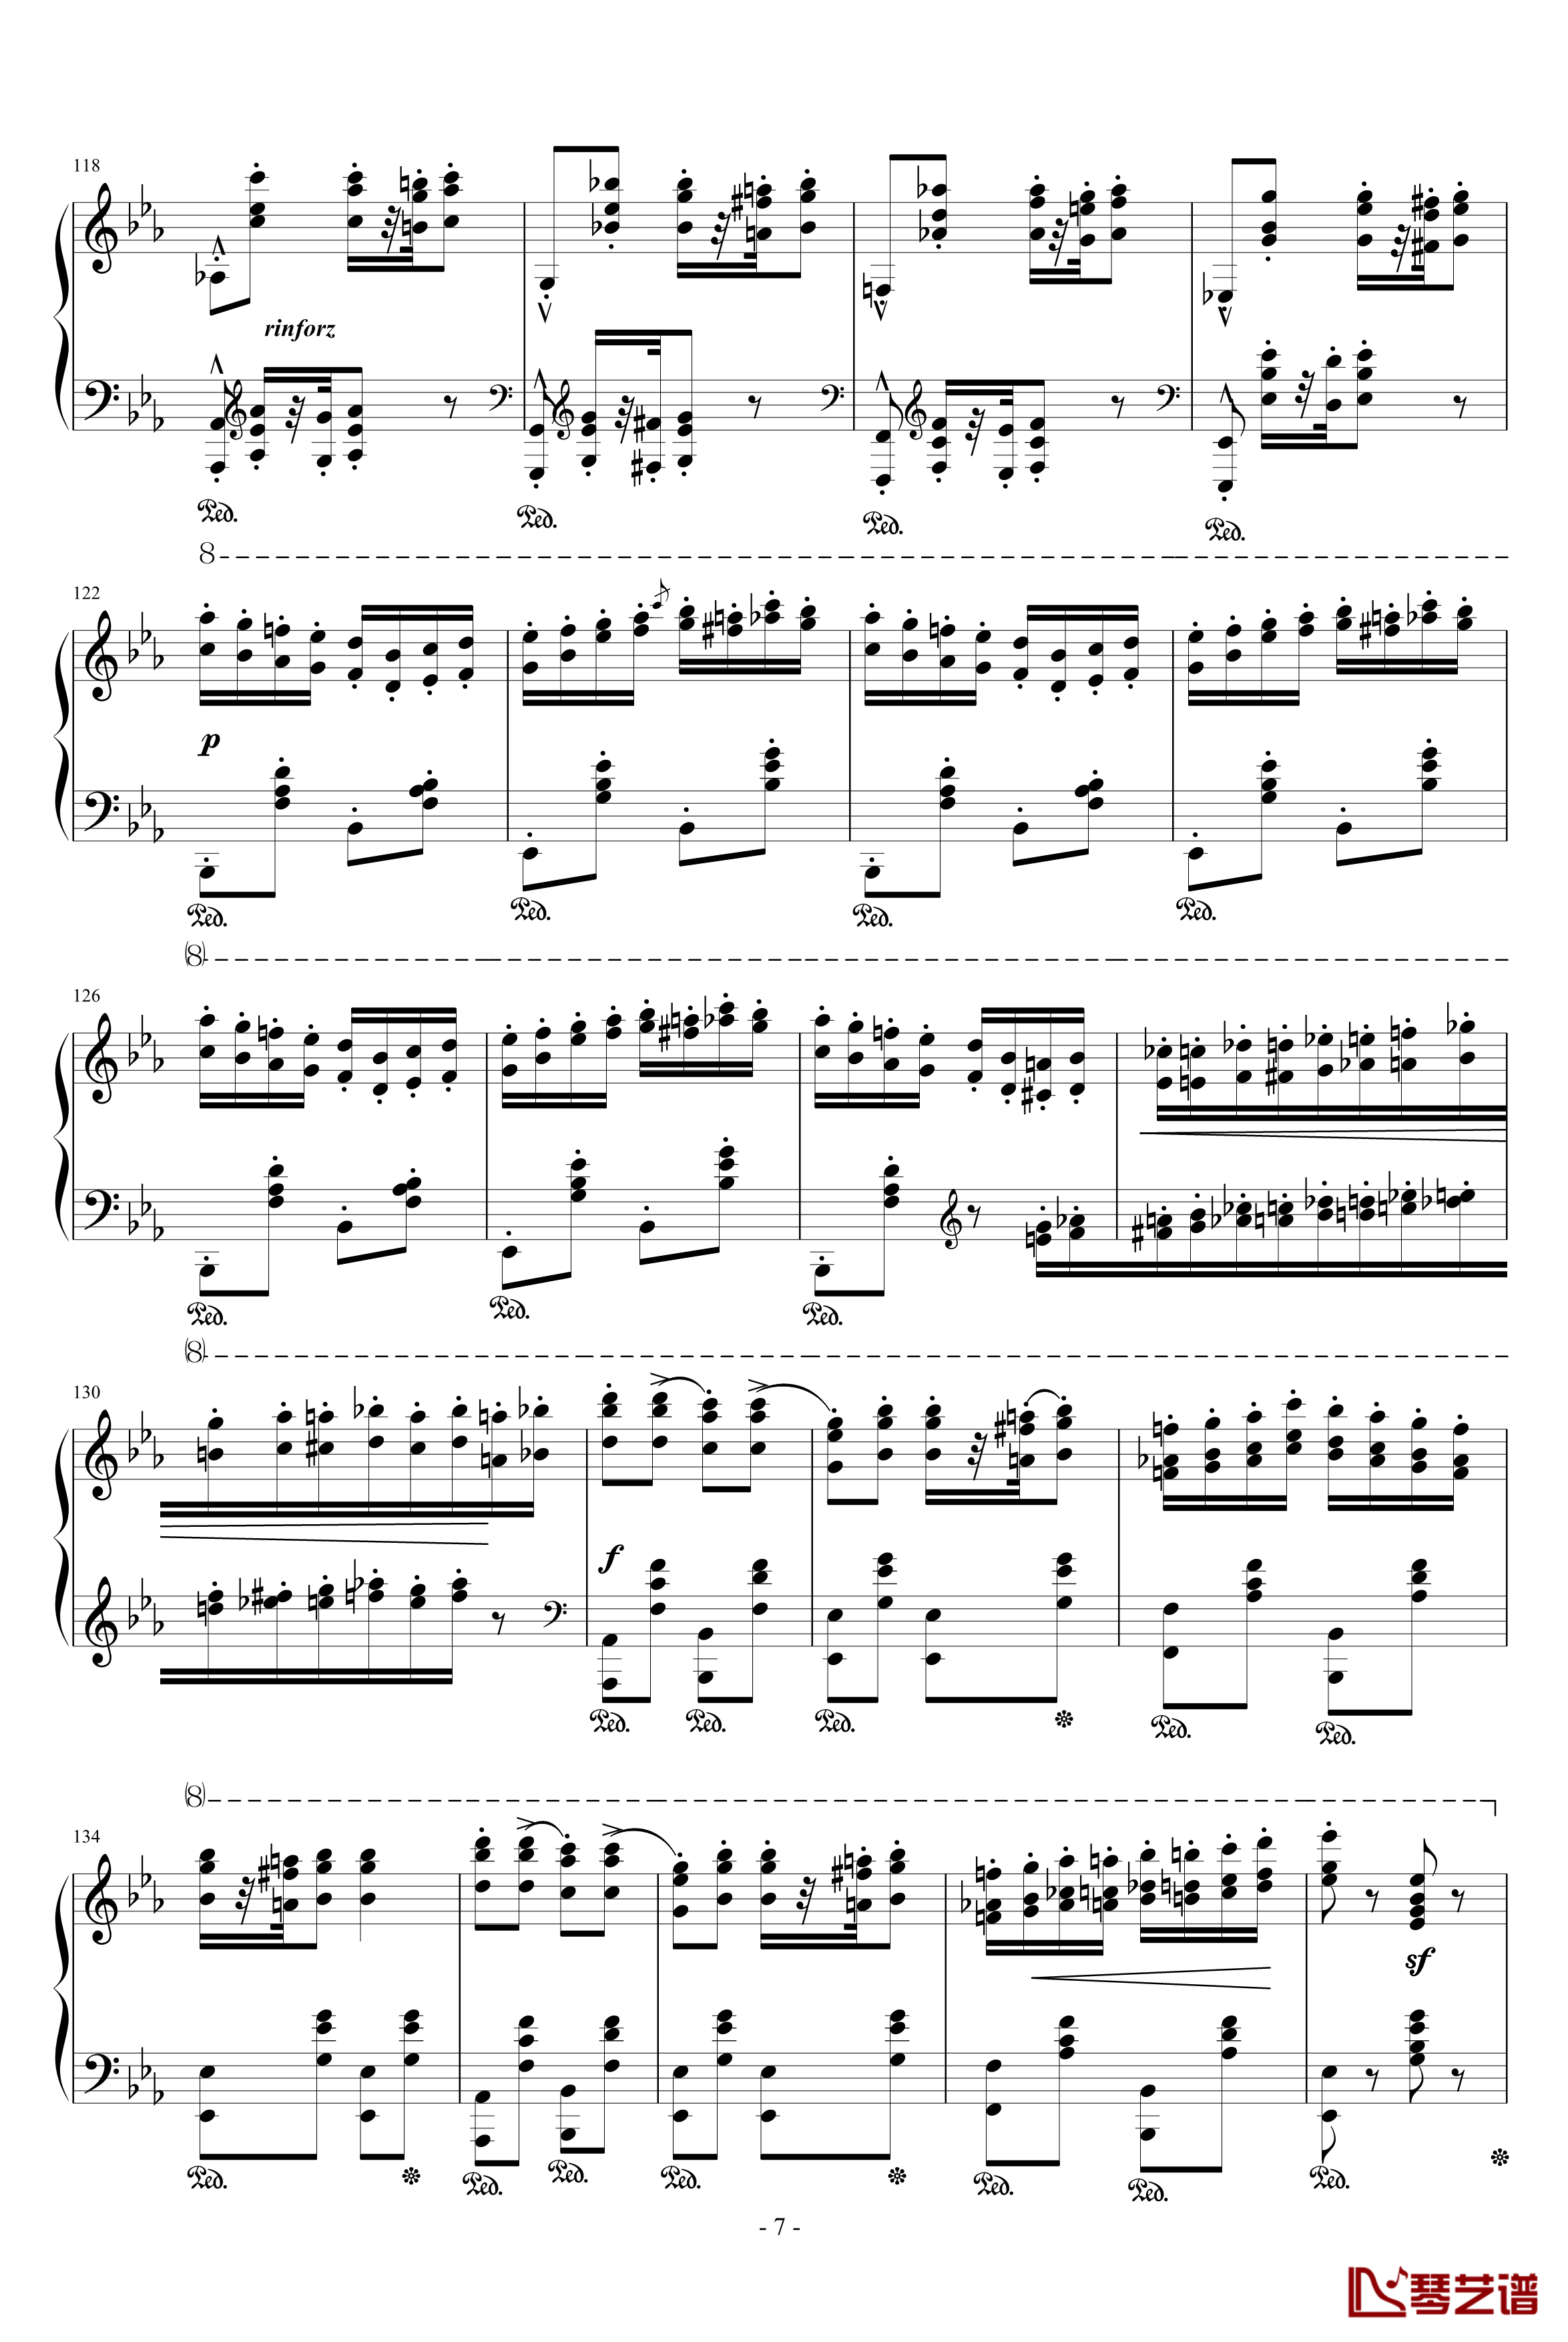 匈牙利狂想曲第9号钢琴谱-19首匈狂里篇幅最浩大、技巧最艰深的作品之一-李斯特7